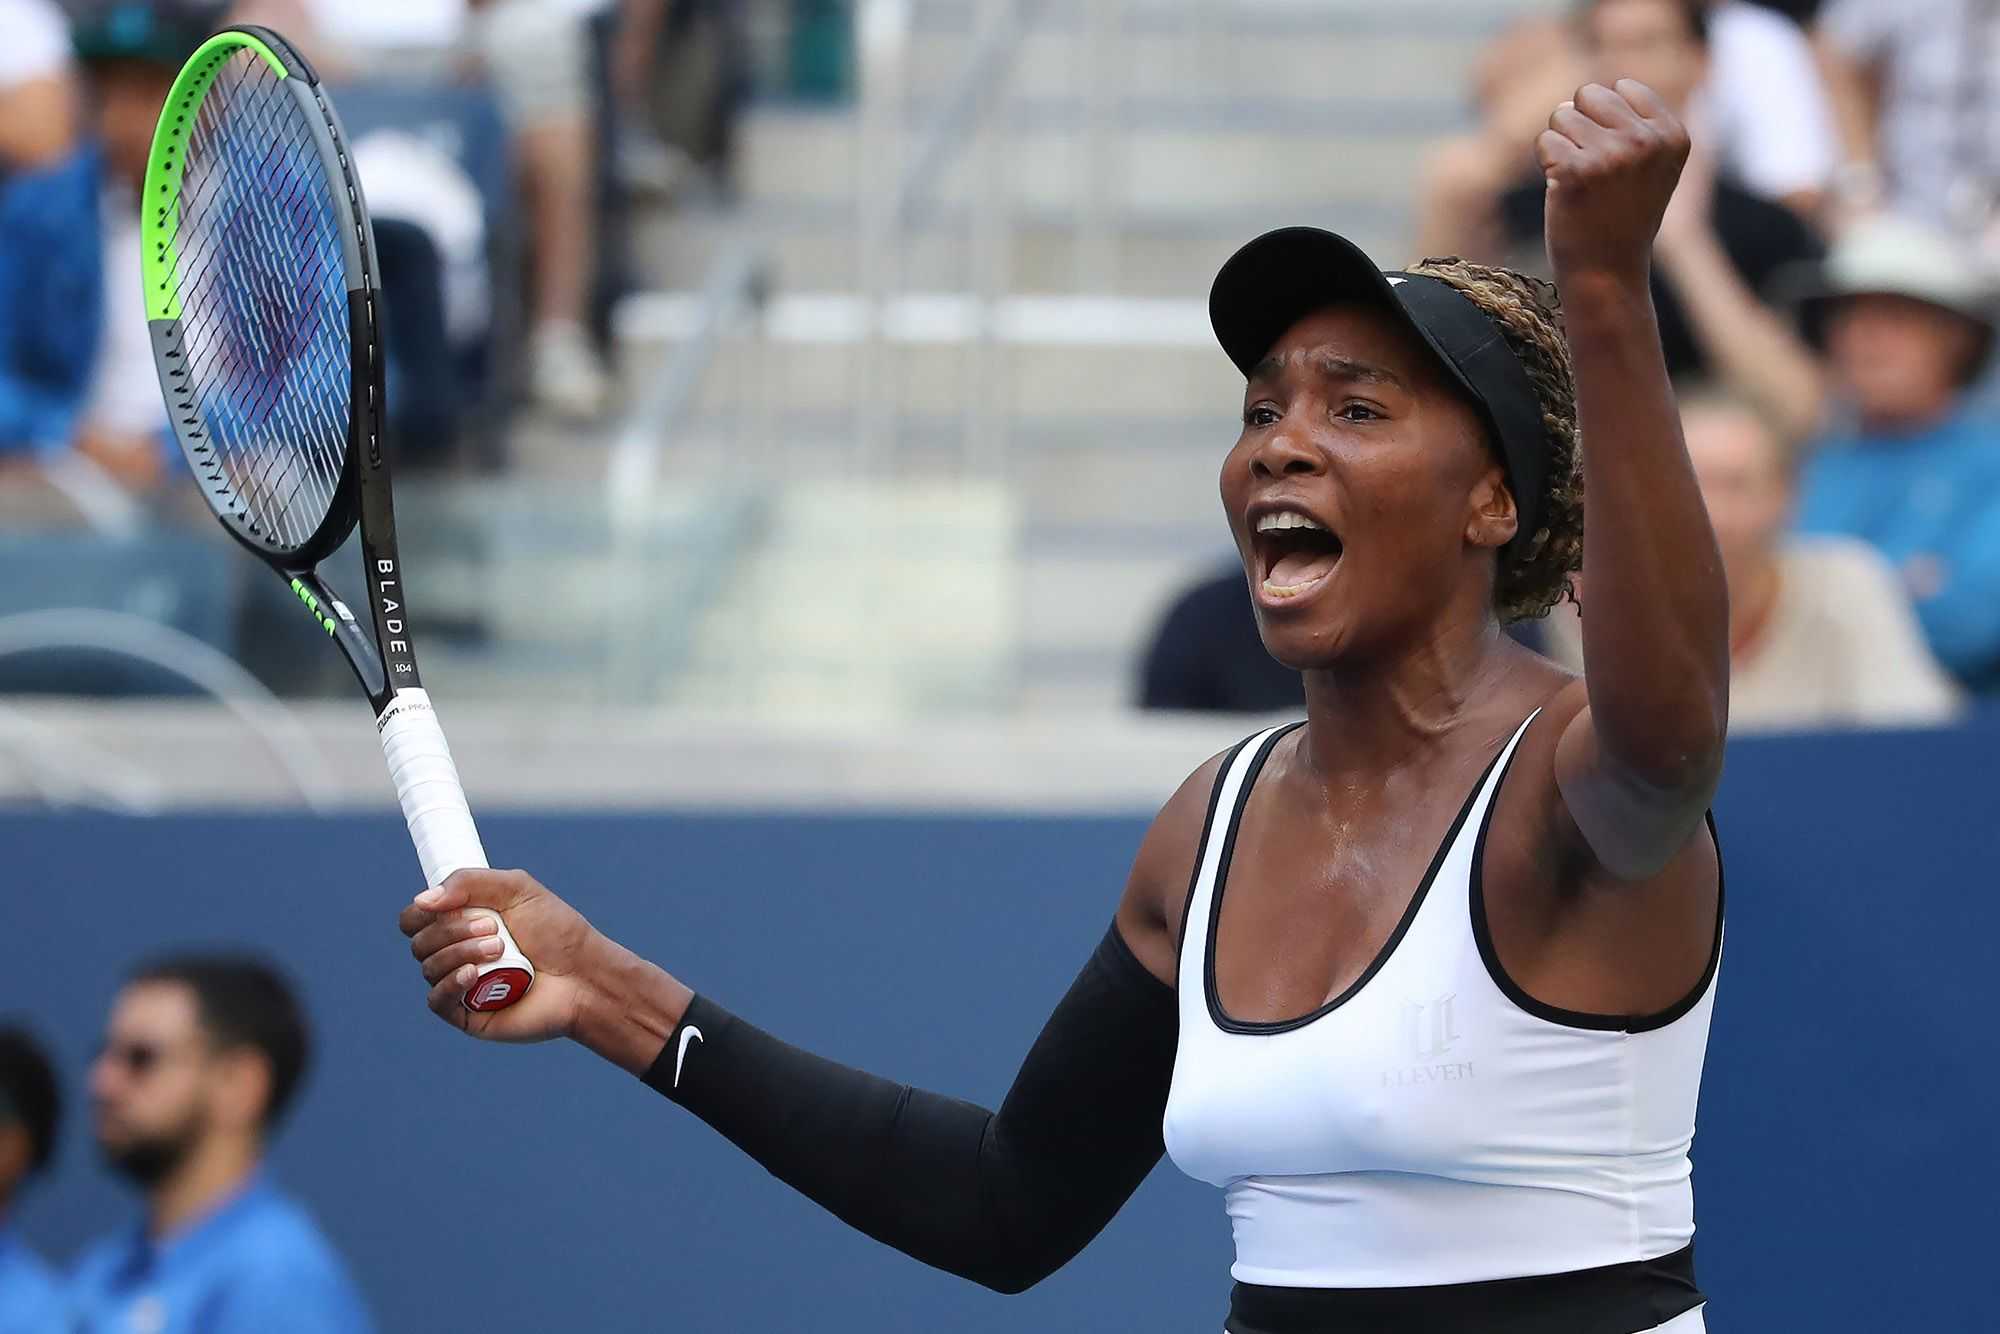 "Vous me verrez à New York" - Venus Williams suit sœur Serena Williams alors qu'elle s'engage à l'US Open